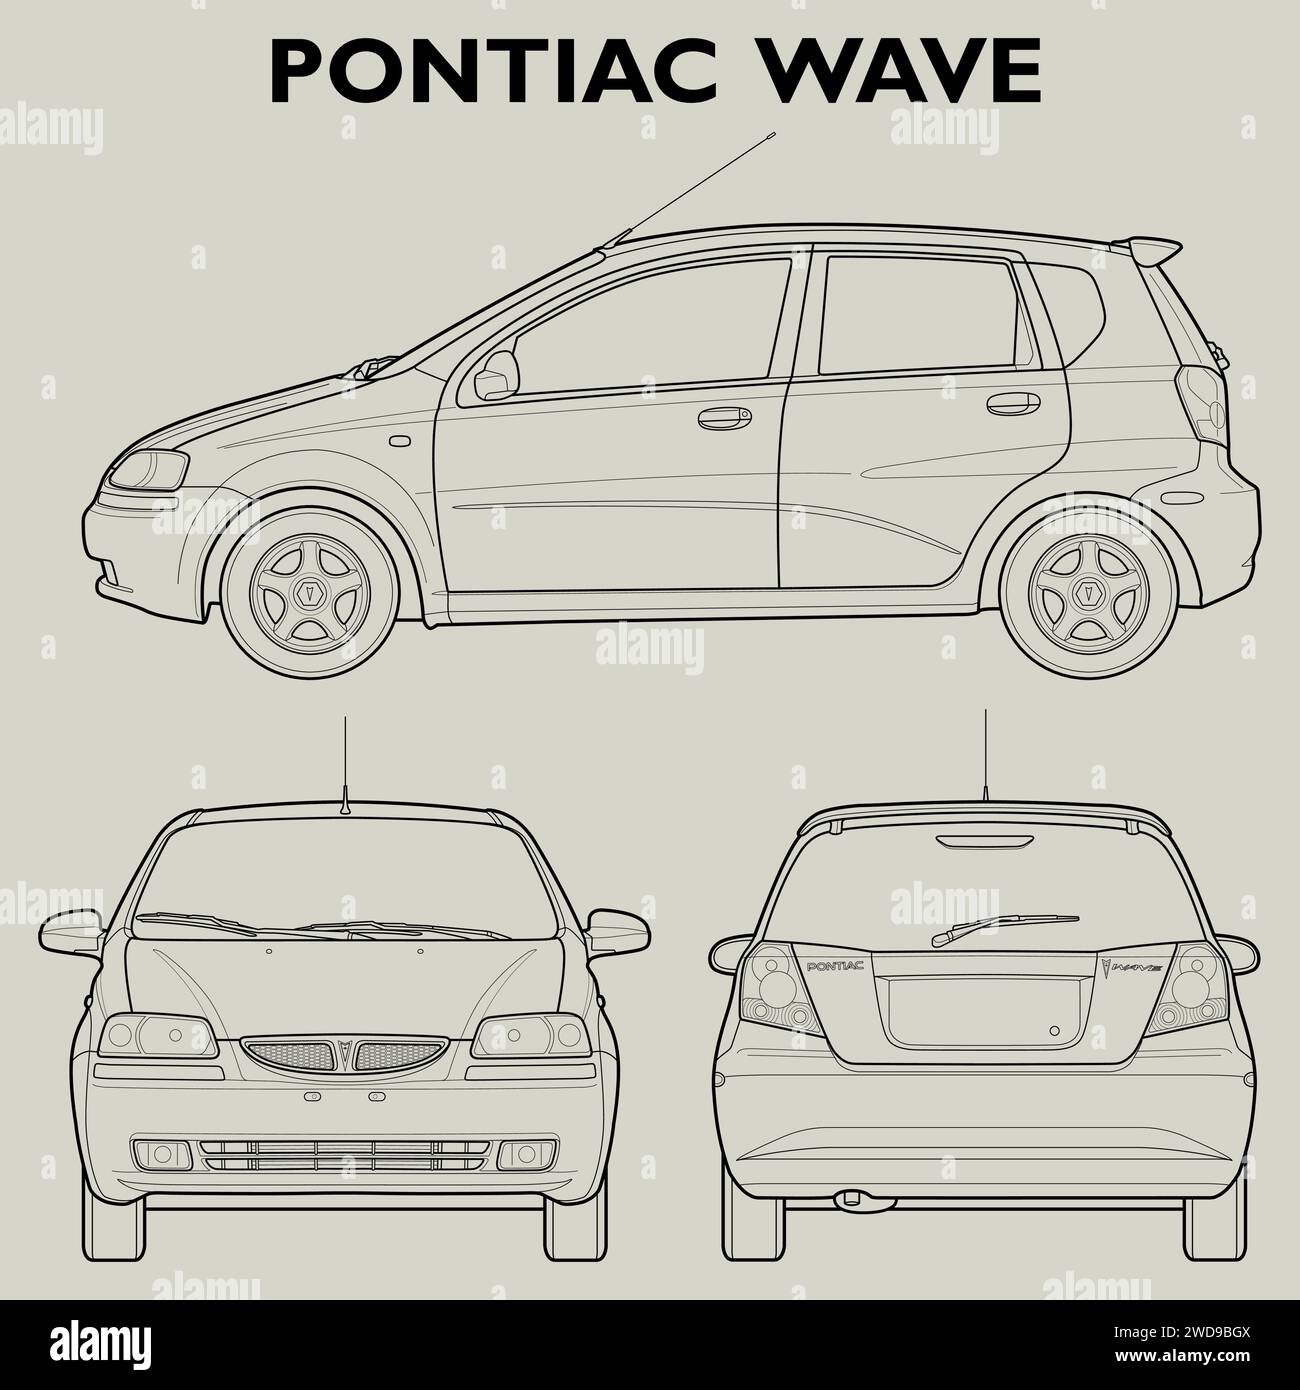 2005 progetto della Pontiac Wave Car Illustrazione Vettoriale